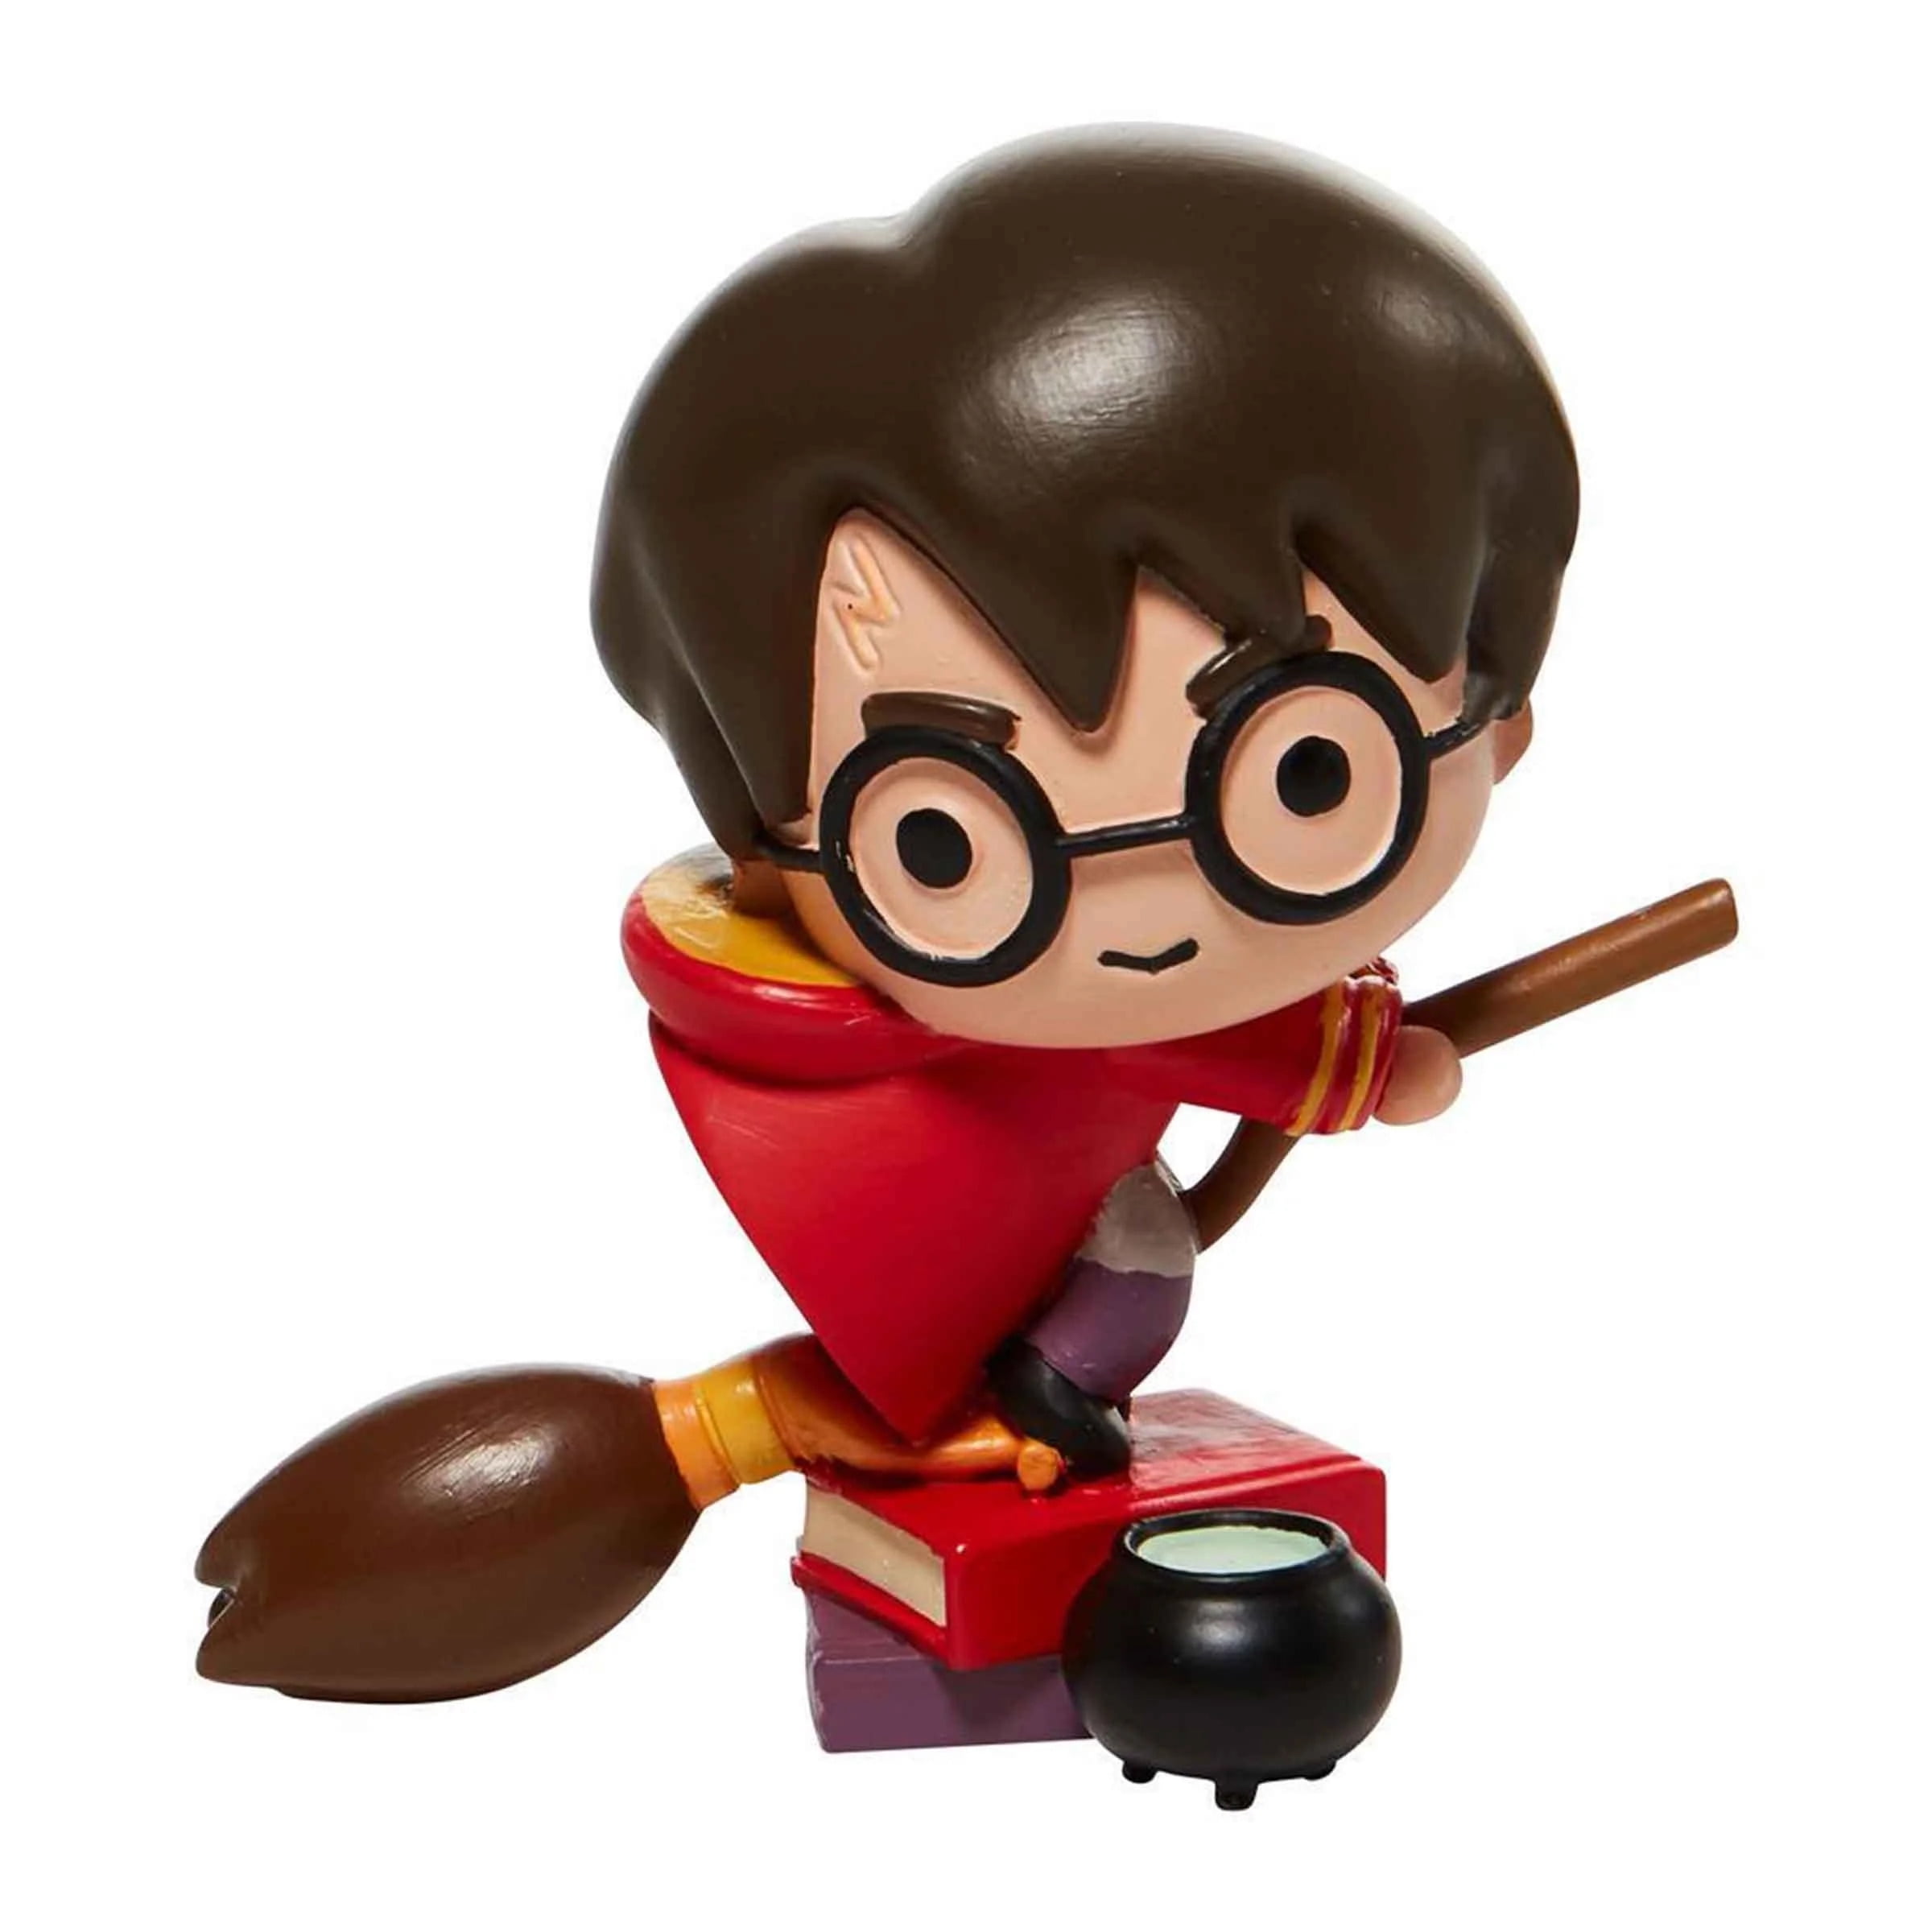 Harry Potter On Broom Mini Figure